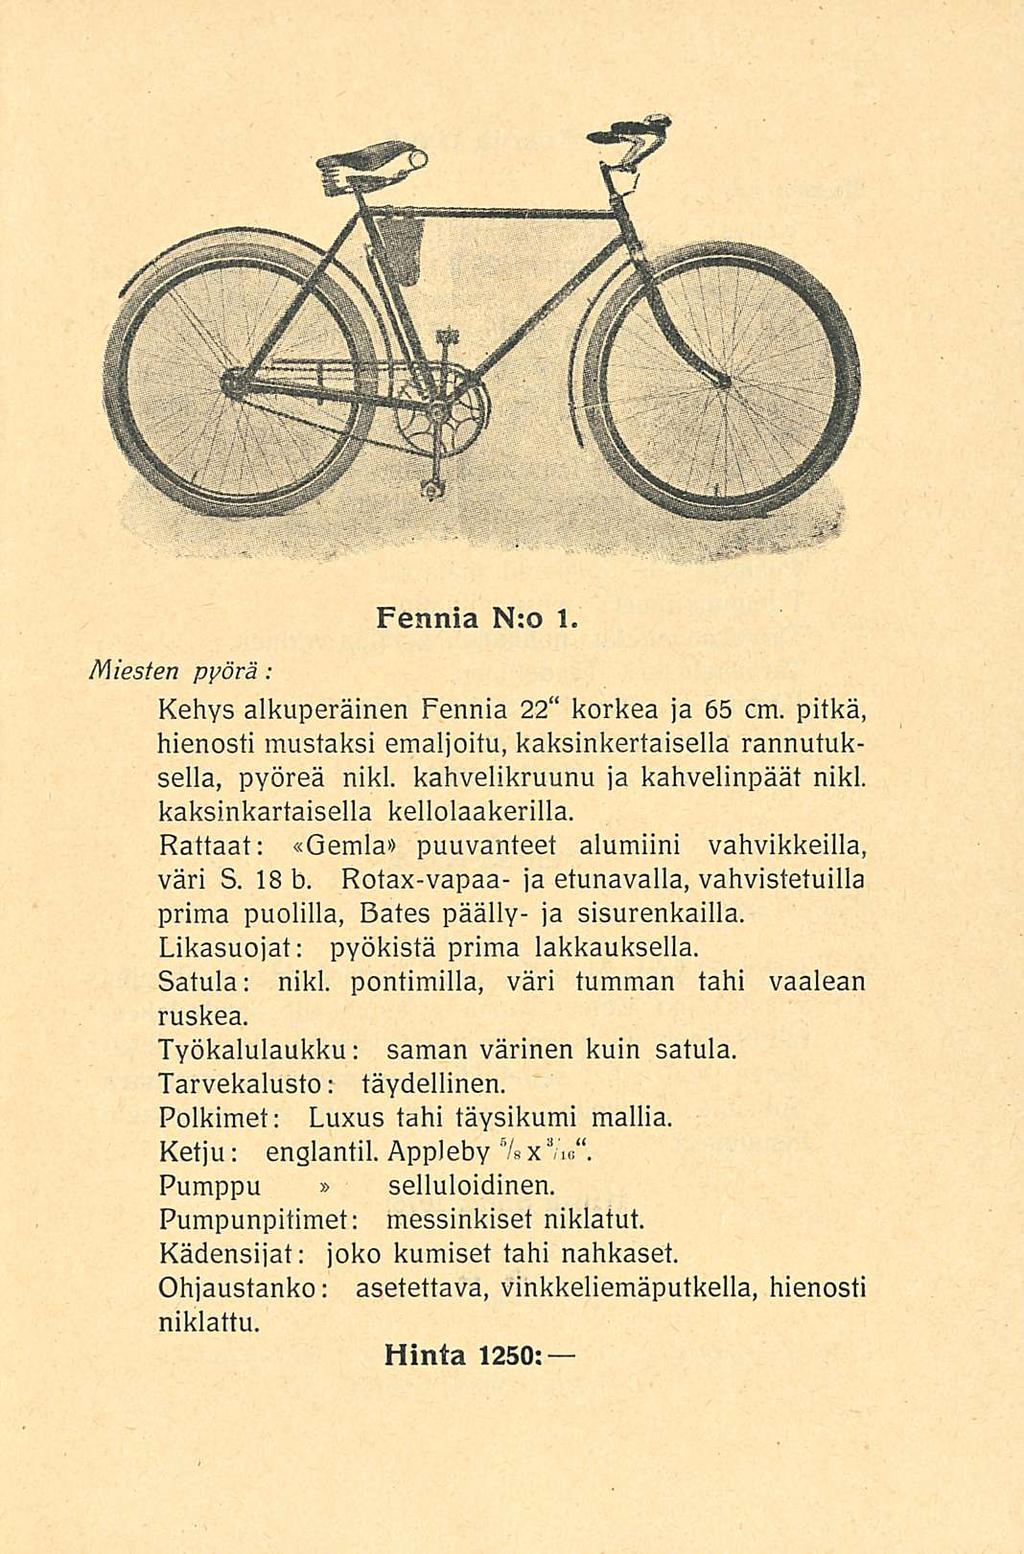 Miesten pyörä : Fennia N:o 1 Kehys alkuperäinen Fennia 22 korkea ja 65 cm pitkä, hienosti mustaksi emaljoitu, kaksinkertaisella rannutuksella, pyöreä nikl kahvelikruunu ja kahvelinpäät nikl